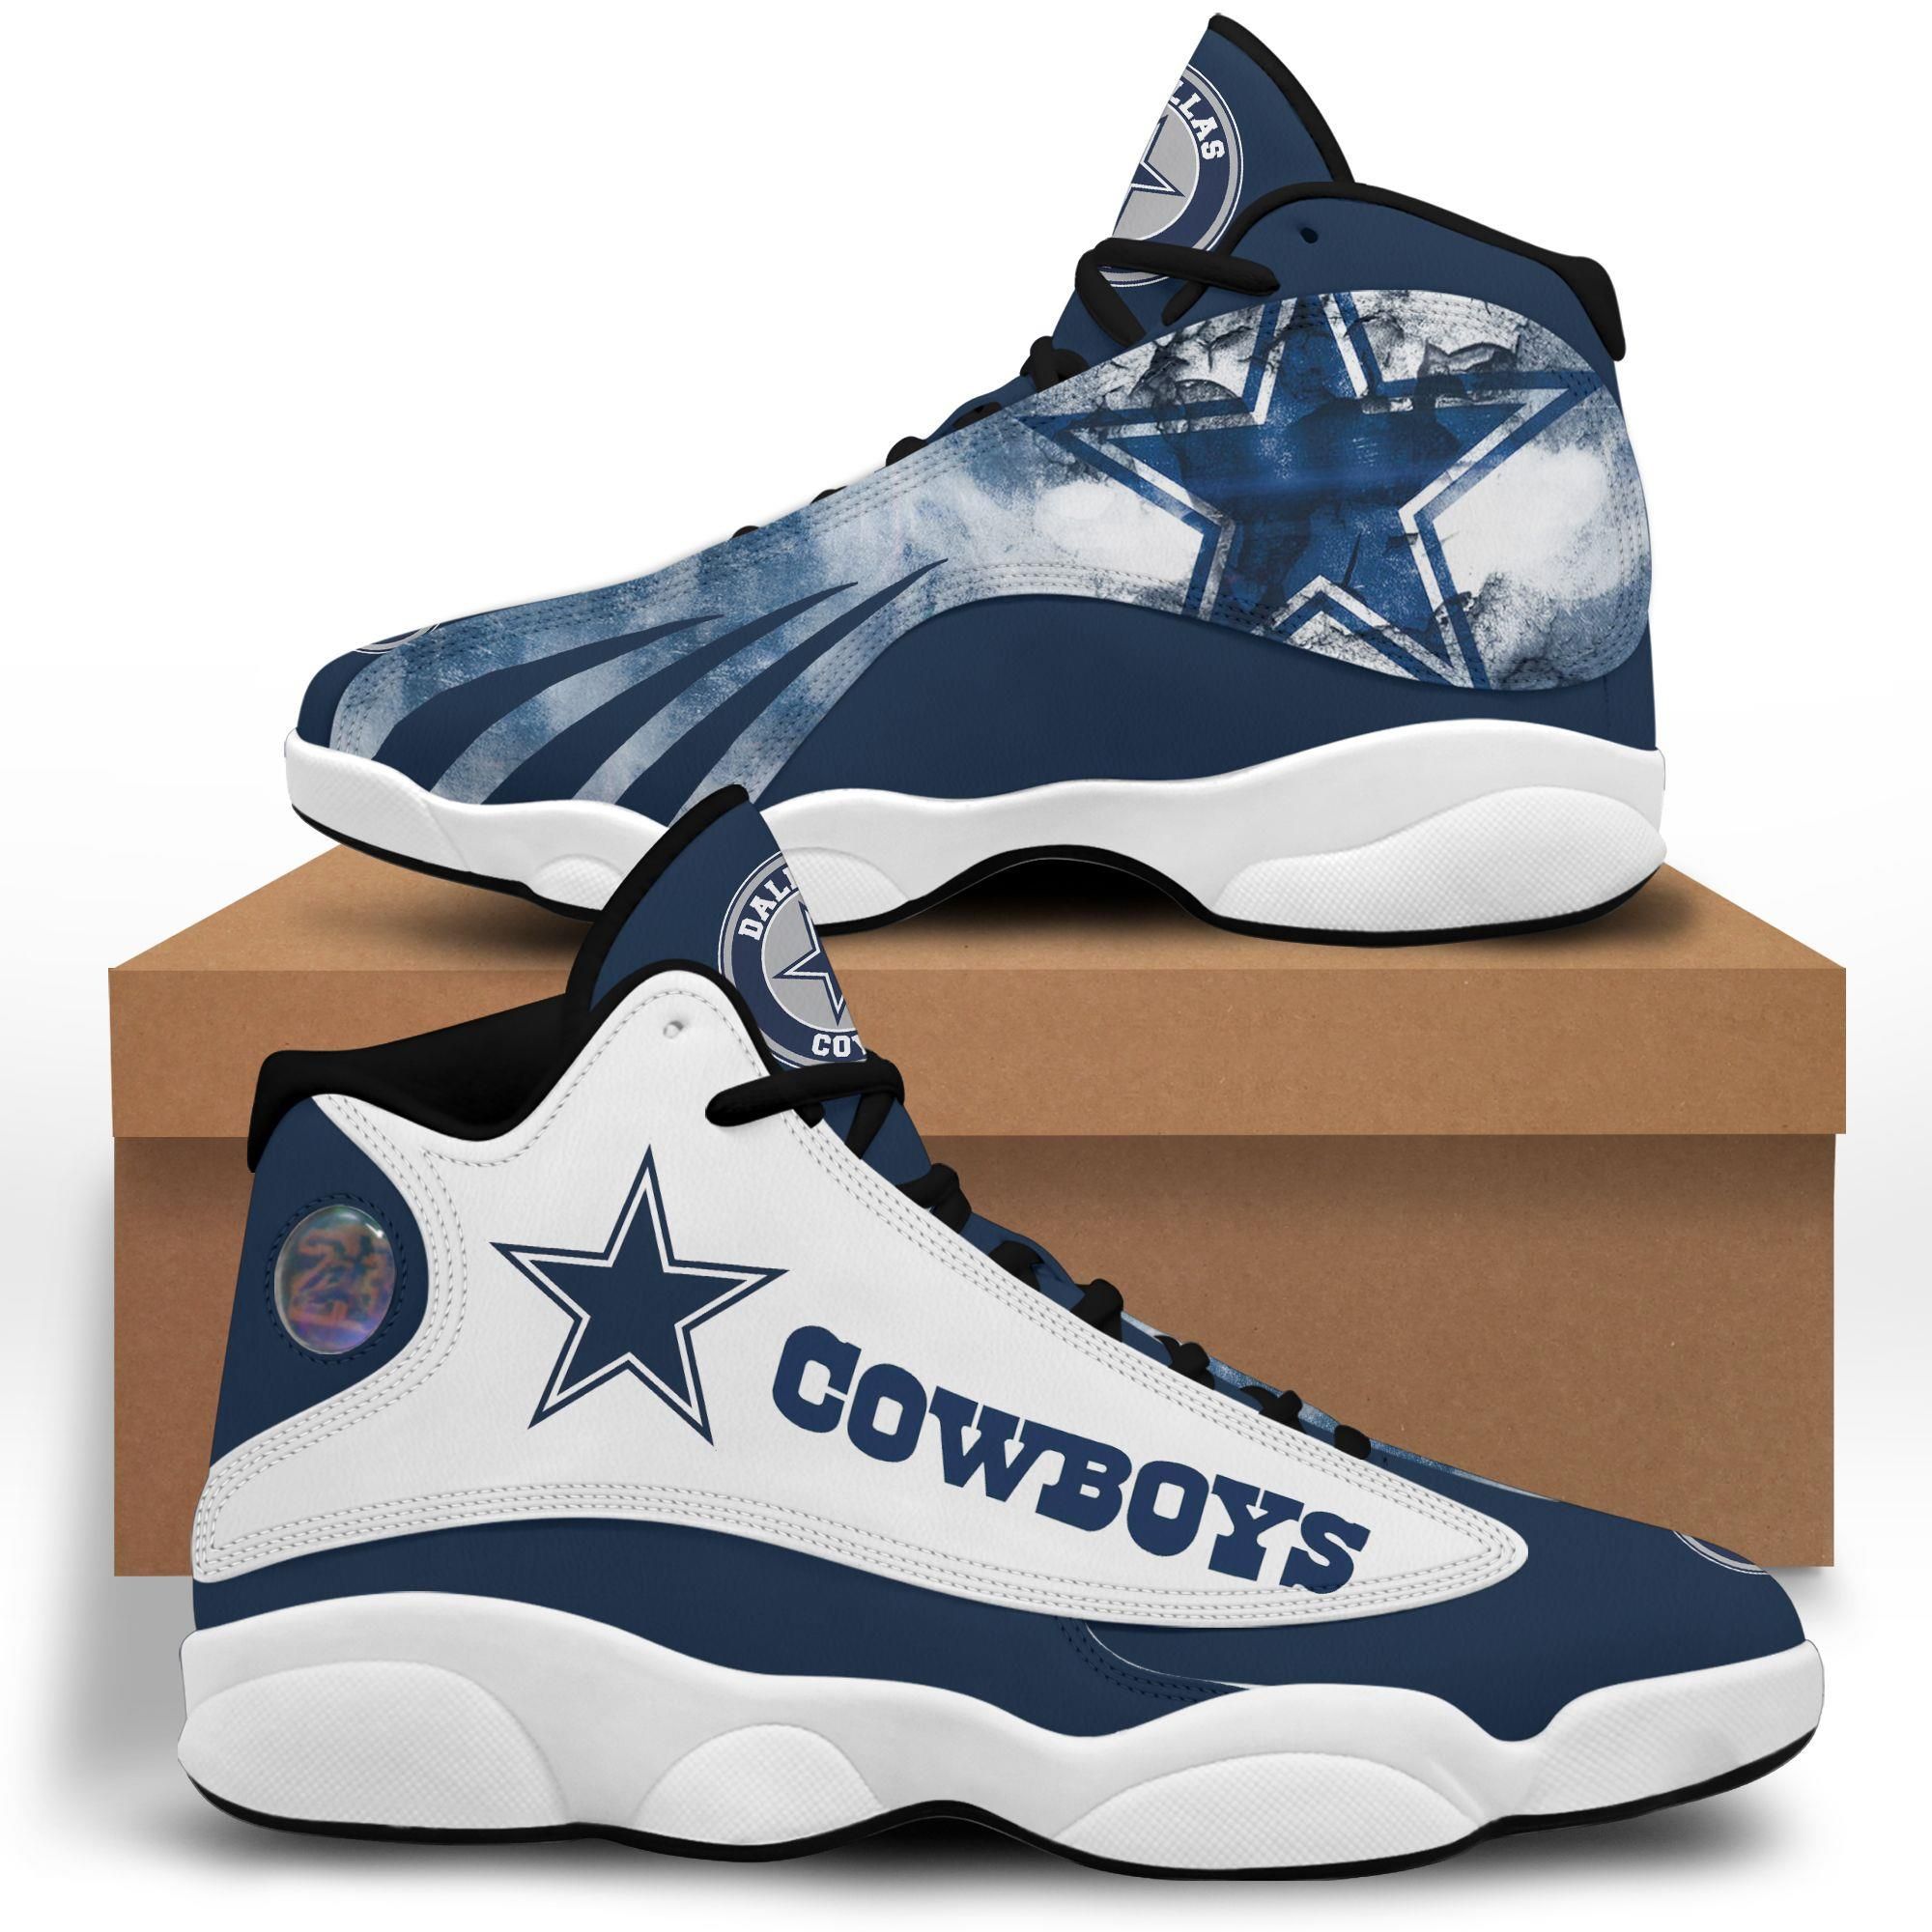 Dallas cowboys air jordan 13 custom sneakers running shoes full size for men- women